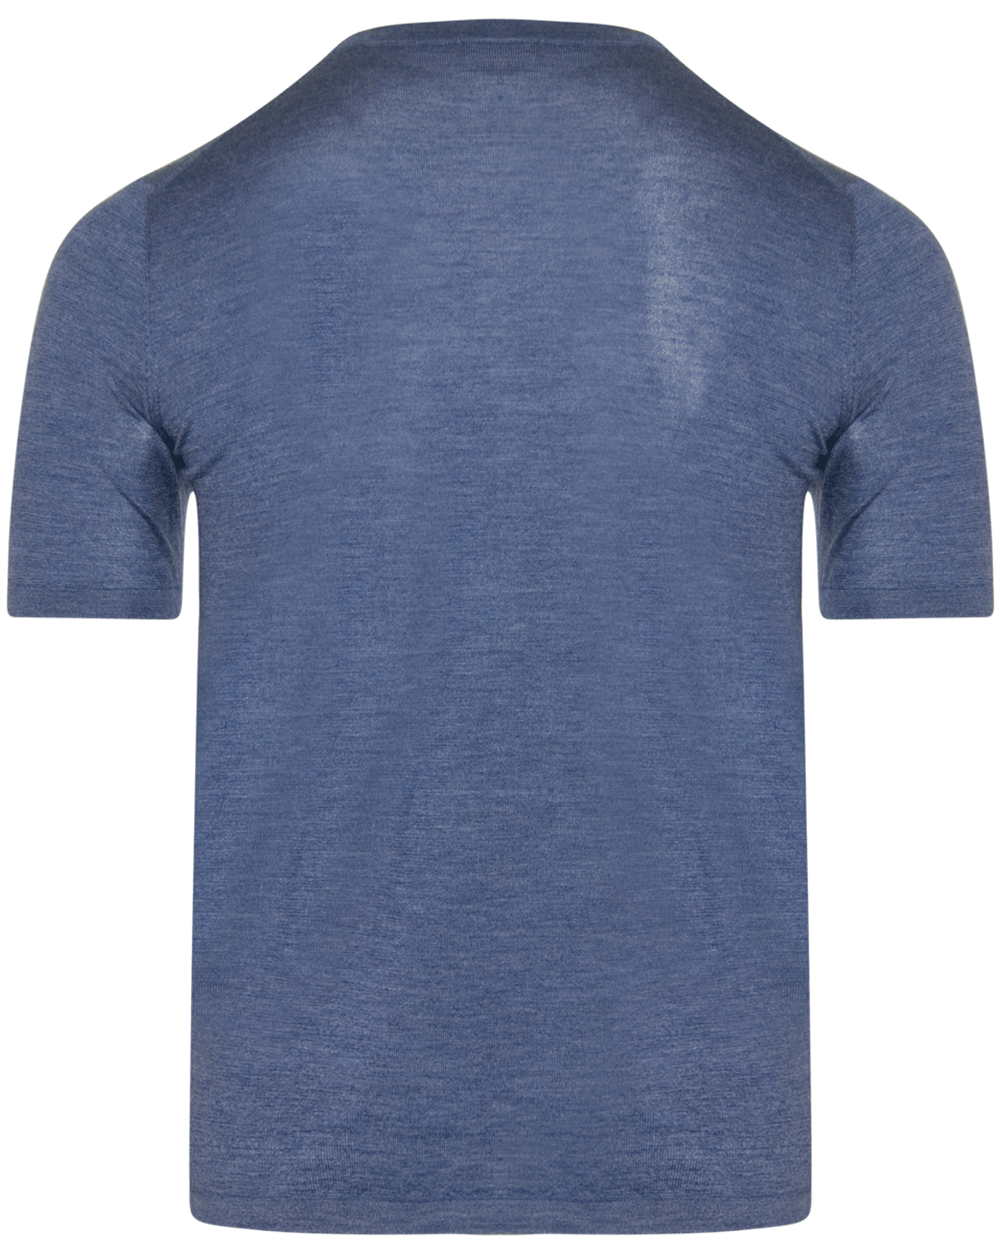 Light Blue Jersey Knit T-Shirt